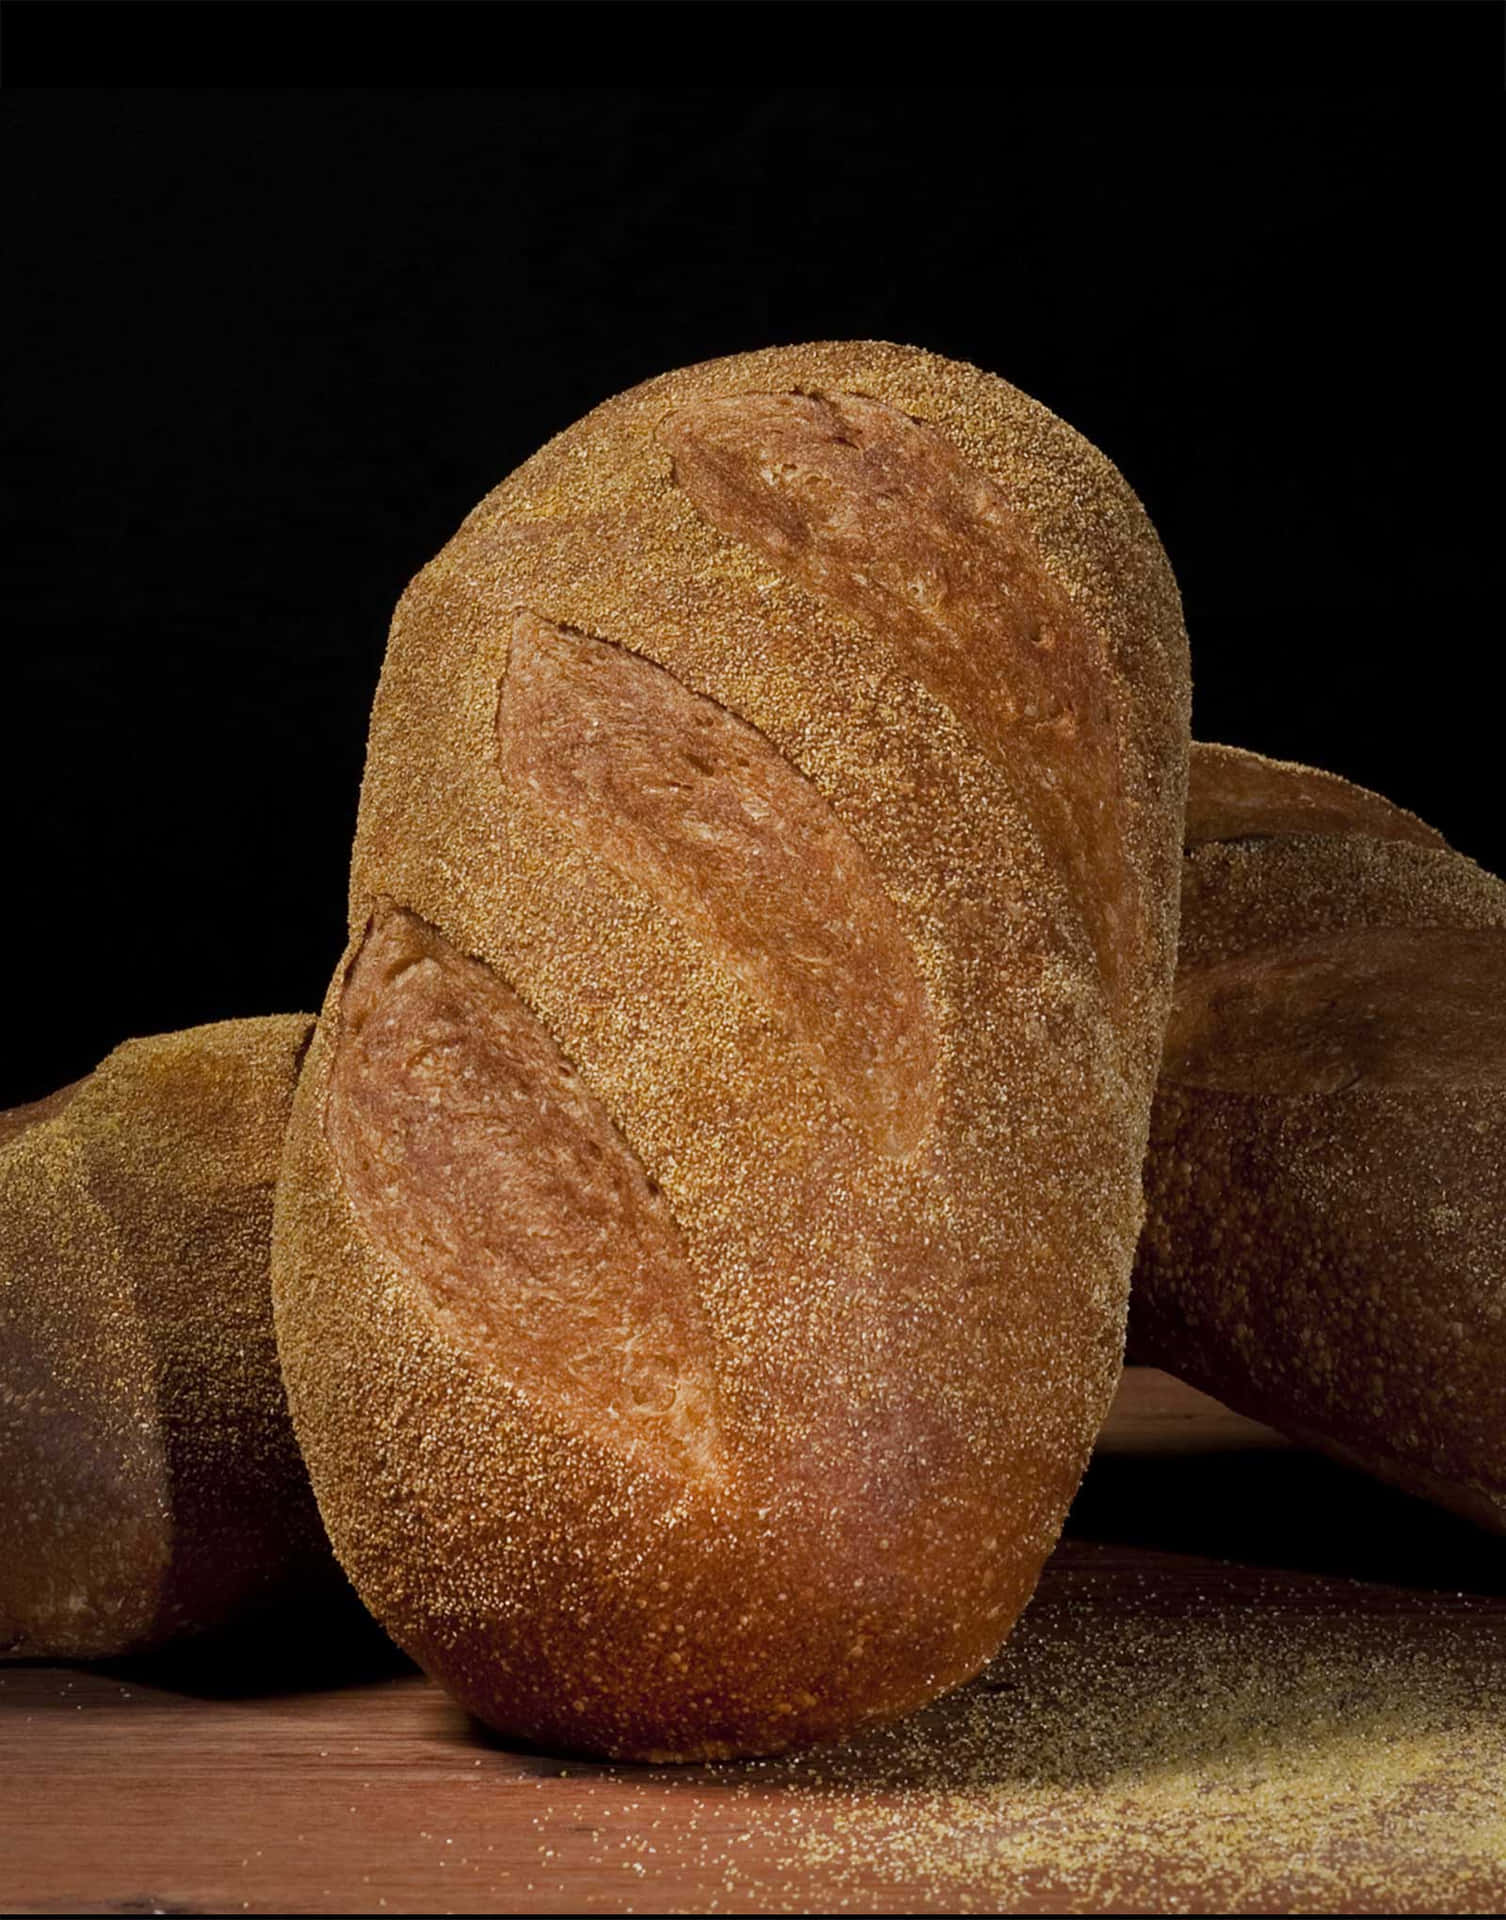 Portrait Crusty Bread Wallpaper